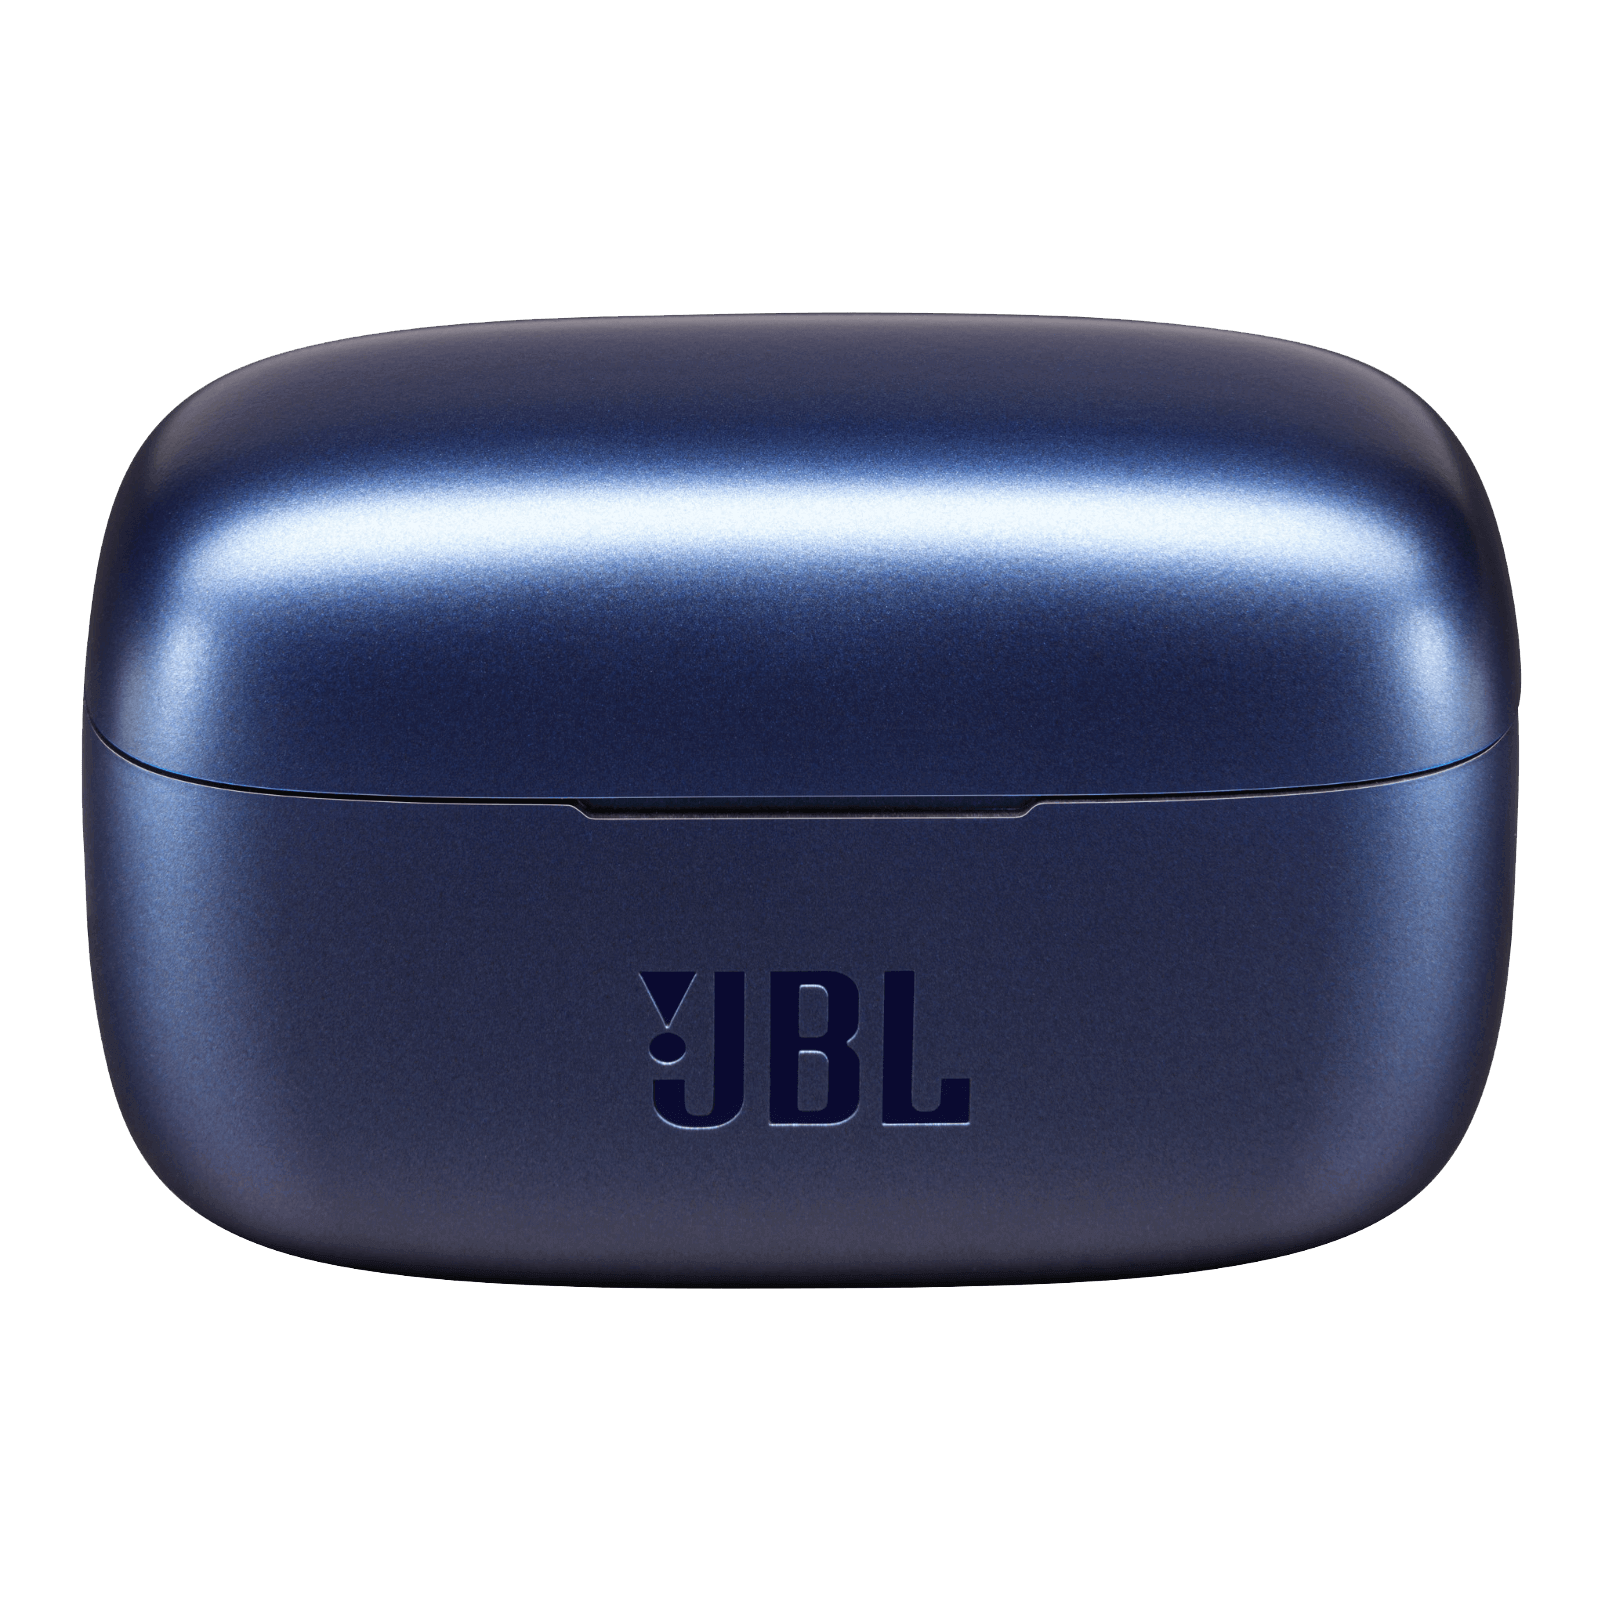 JBL Live 300TWS - Blue - True wireless earbuds - Detailshot 4